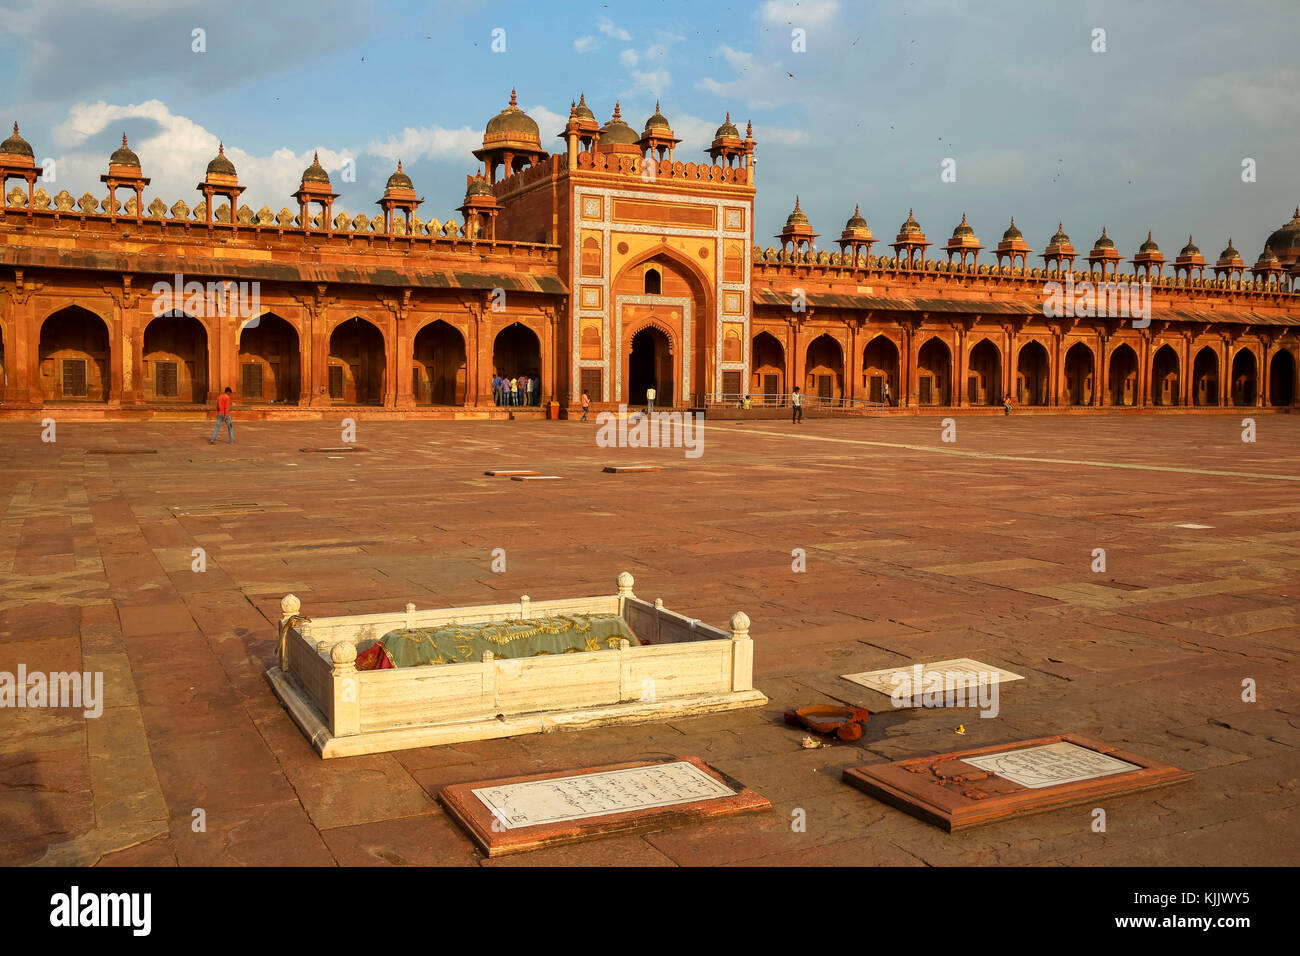 Fatehpur Sikri, fundada en 1569 por el emperador Akbar de Mughal, sirvió como capital del imperio mogol desde 1571 hasta 1585. Patio de la Jama Masj Foto de stock